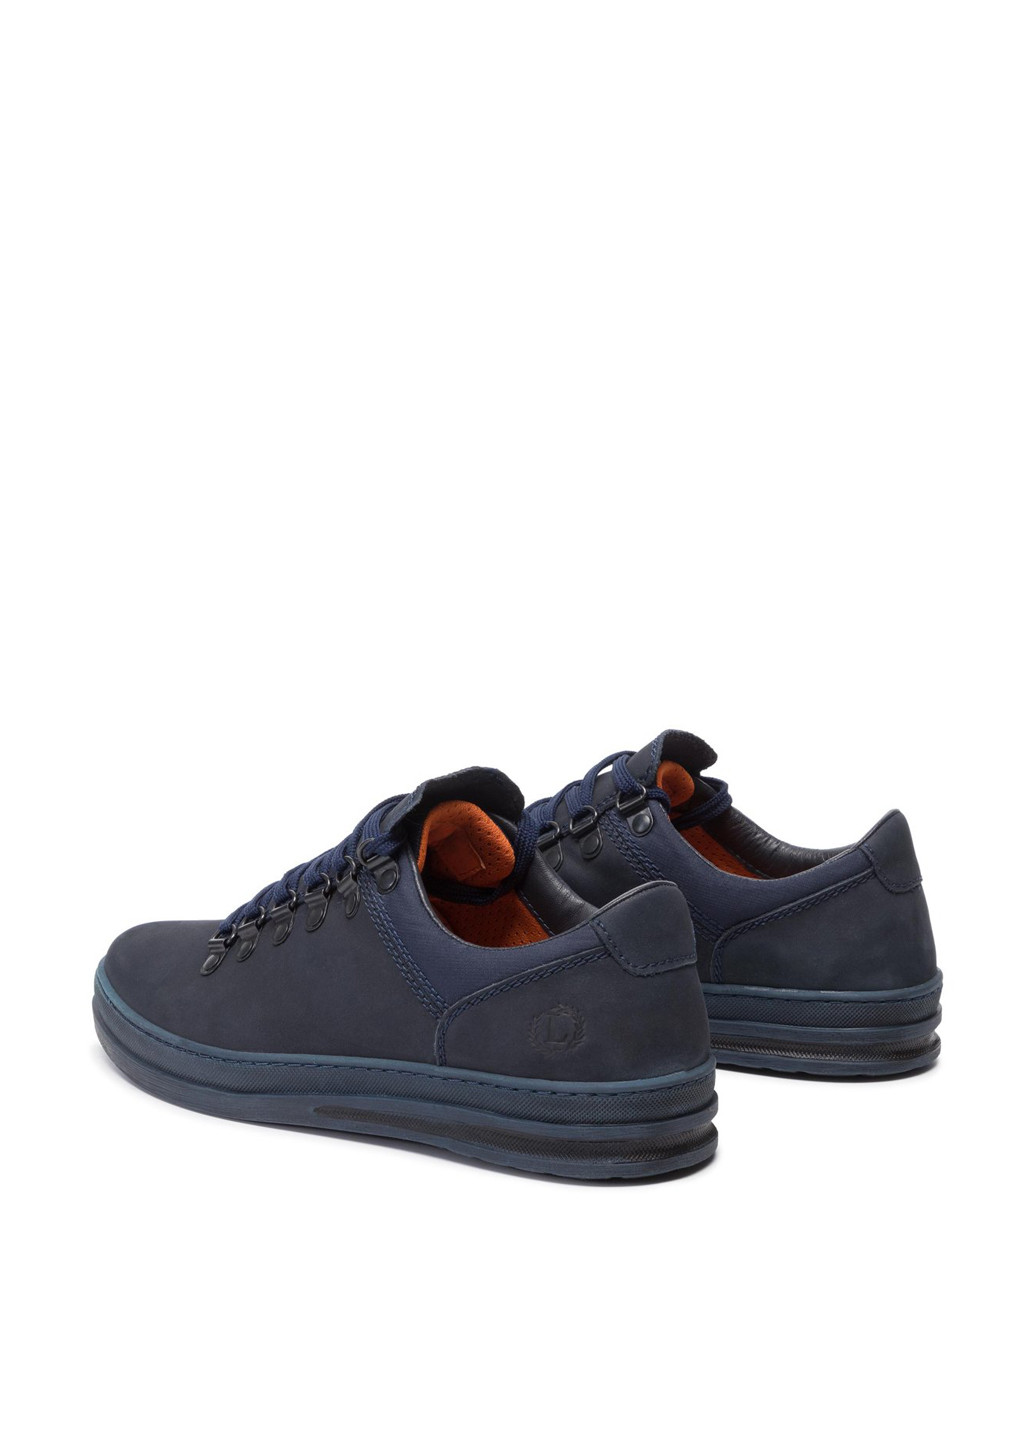 Темно-синие спортивные напівчеревики lasocki for men mi08-c611-601-03 Lasocki for men на шнурках